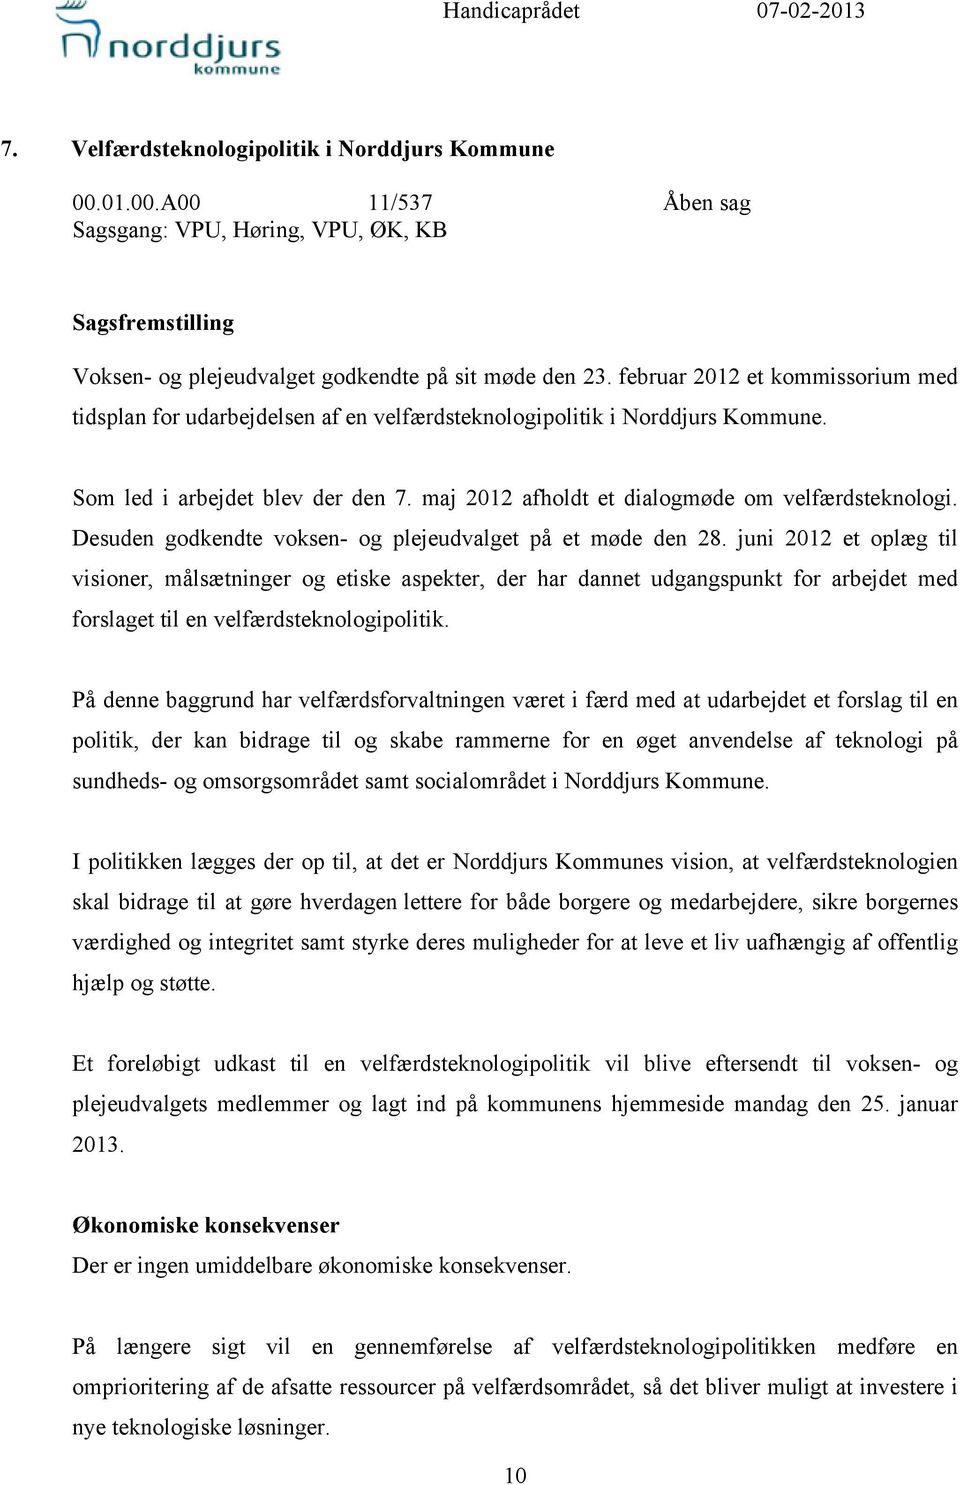 februar 2012 et kommissorium med tidsplan for udarbejdelsen af en velfærdsteknologipolitik i Norddjurs Kommune. Som led i arbejdet blev der den 7. maj 2012 afholdt et dialogmøde om velfærdsteknologi.